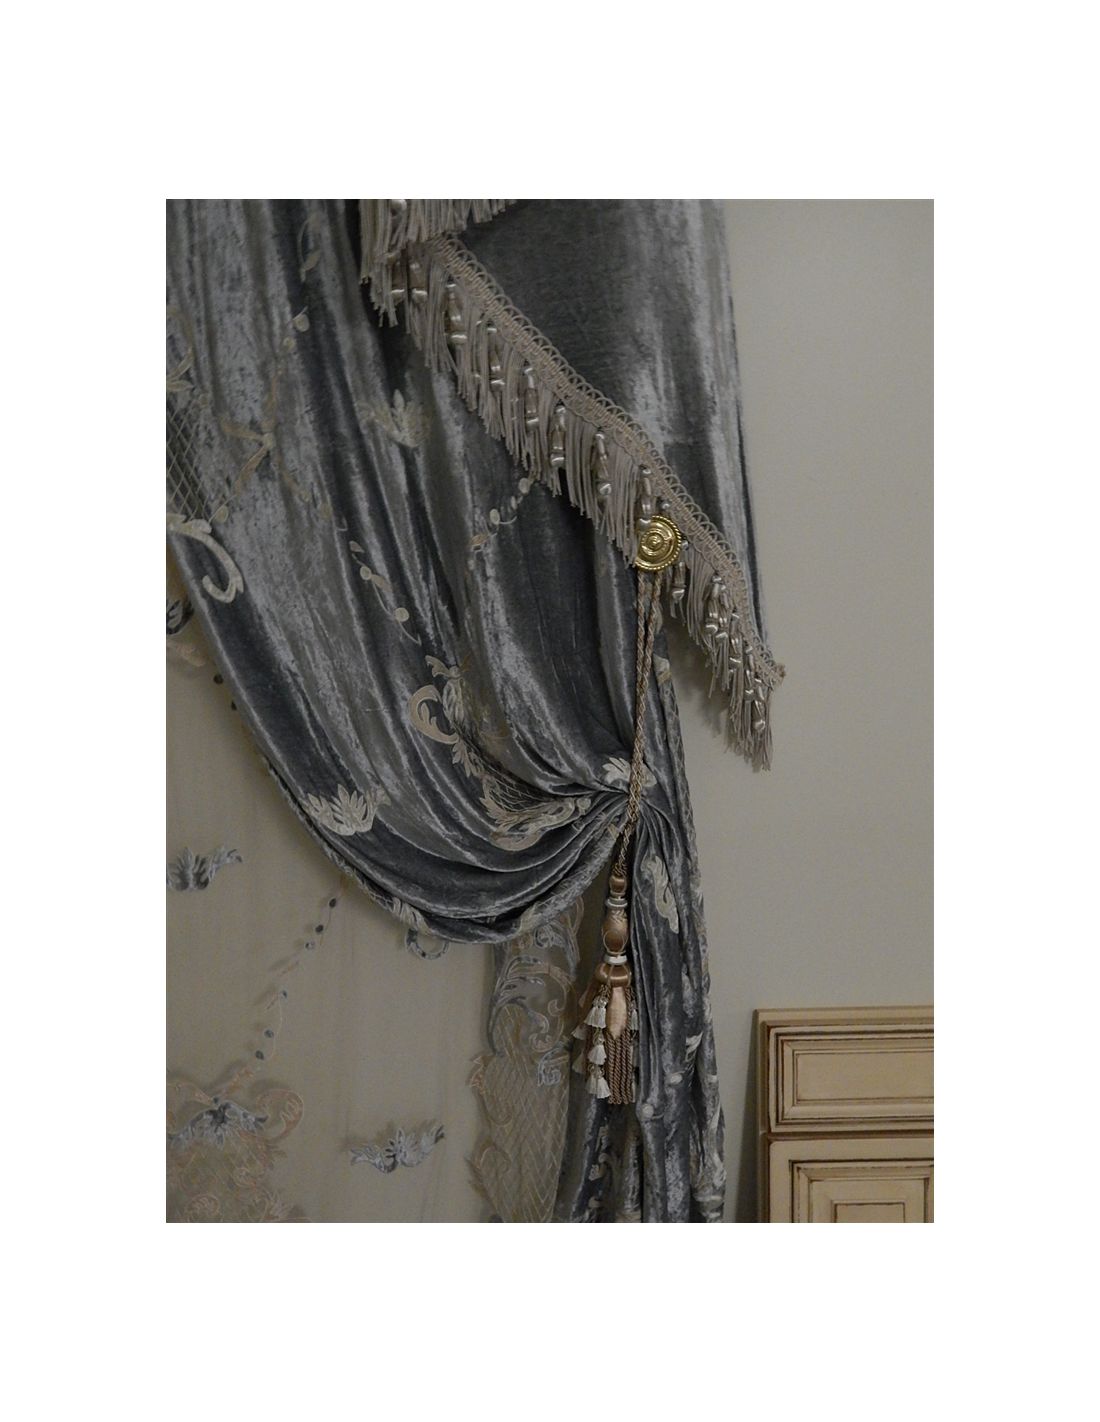 Accessories Venetian Patina Extra Heavy Duty Decorative Chain (5610-57)